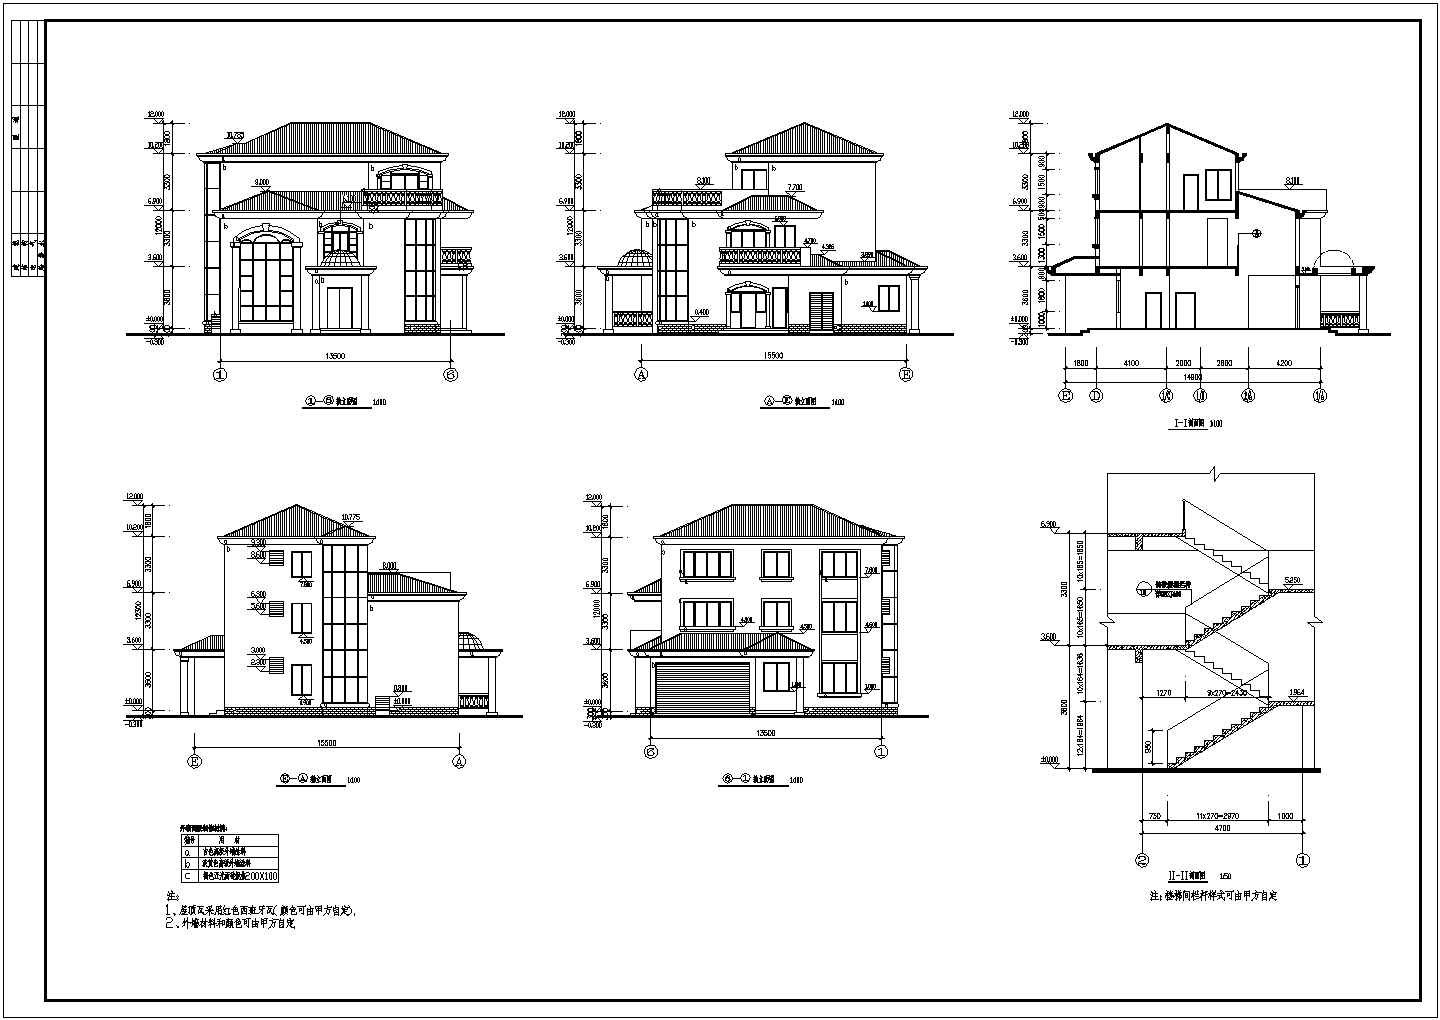 【湖北省】某山区城市经典别墅建筑设计图